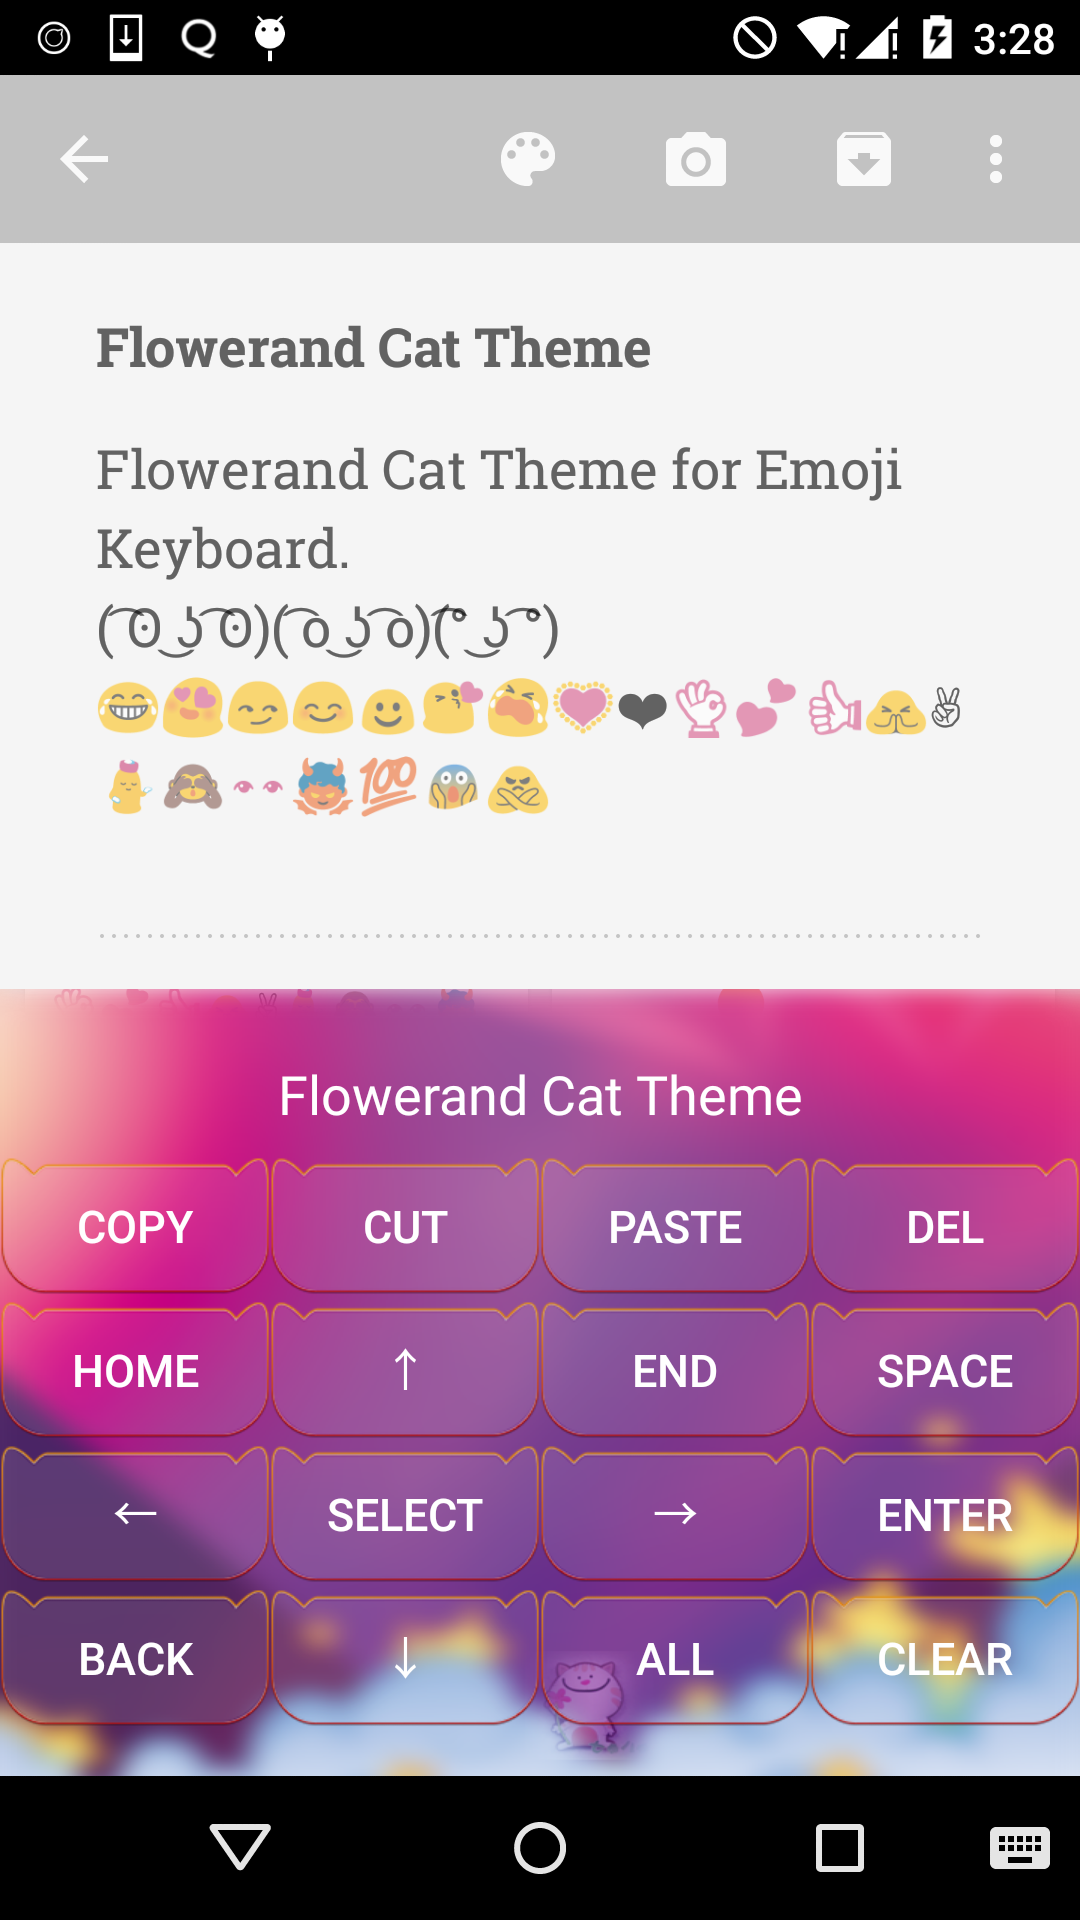 Flower Emoji Keyboard Apk 1 4 4 Download For Android Download Flower Emoji Keyboard Apk Latest Version Apkfab Com